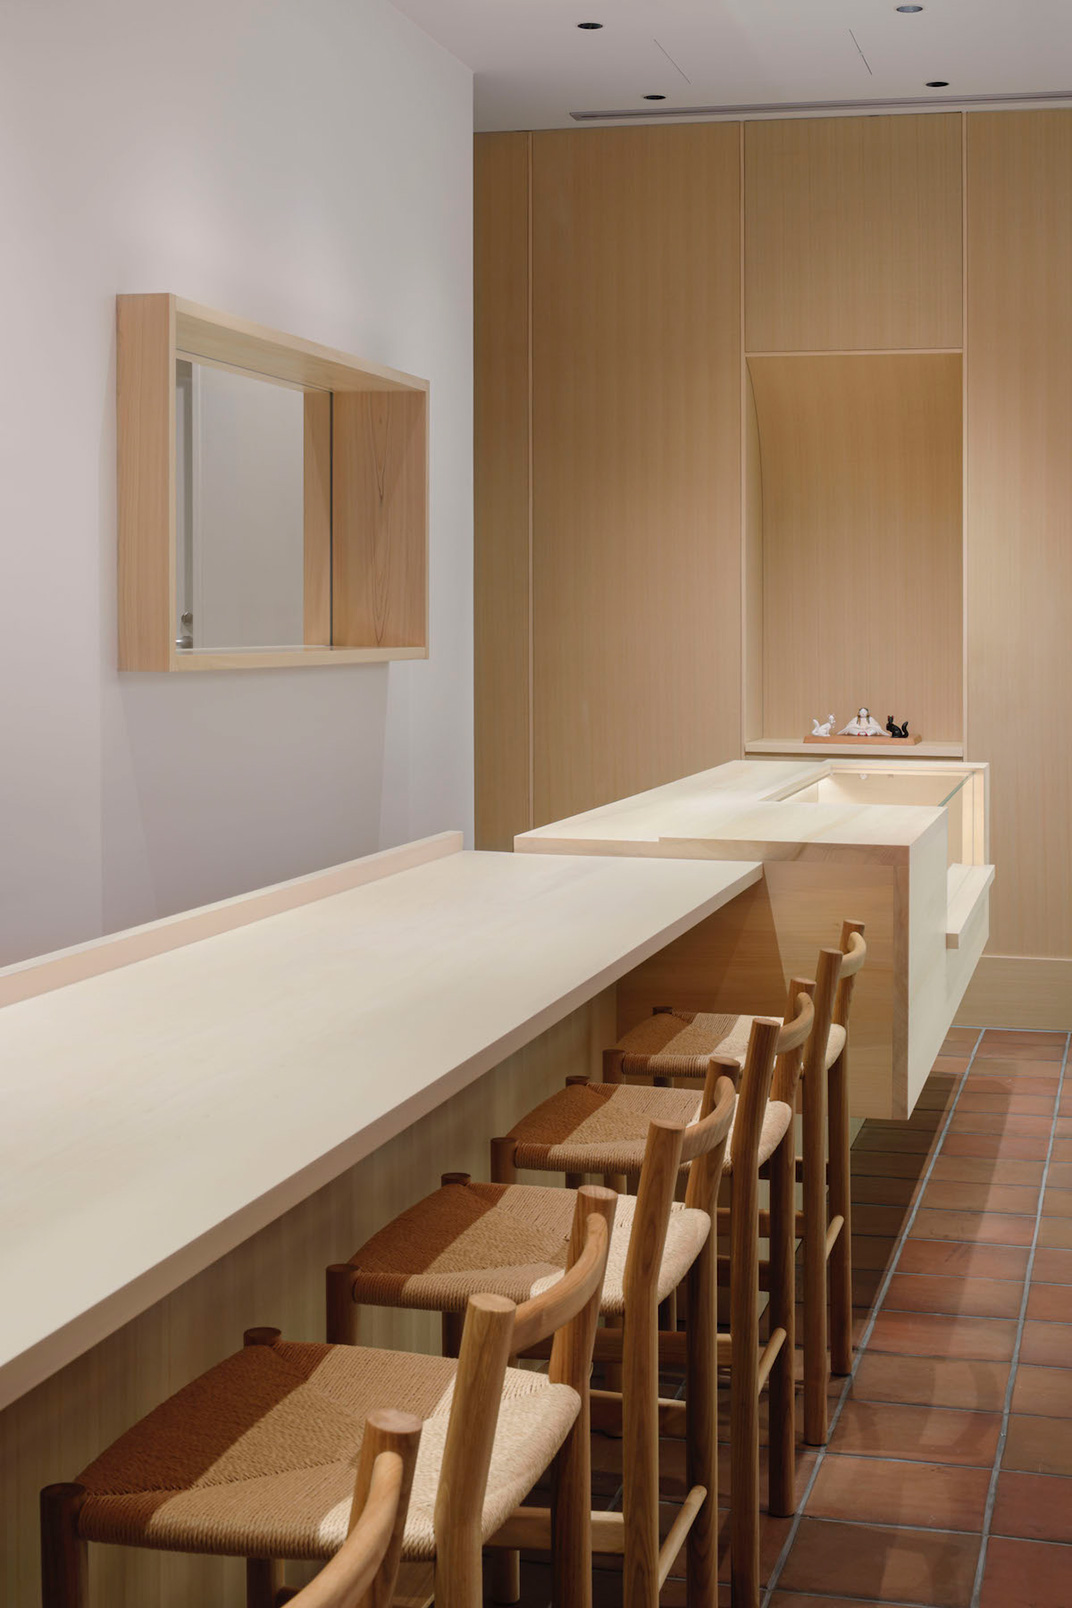 日本料理餐厅空间设计 IDIN Architects 视觉餐饮 全球餐饮研究所 vi设计 空间设计 深圳 武汉 杭州 广州 上海 北京